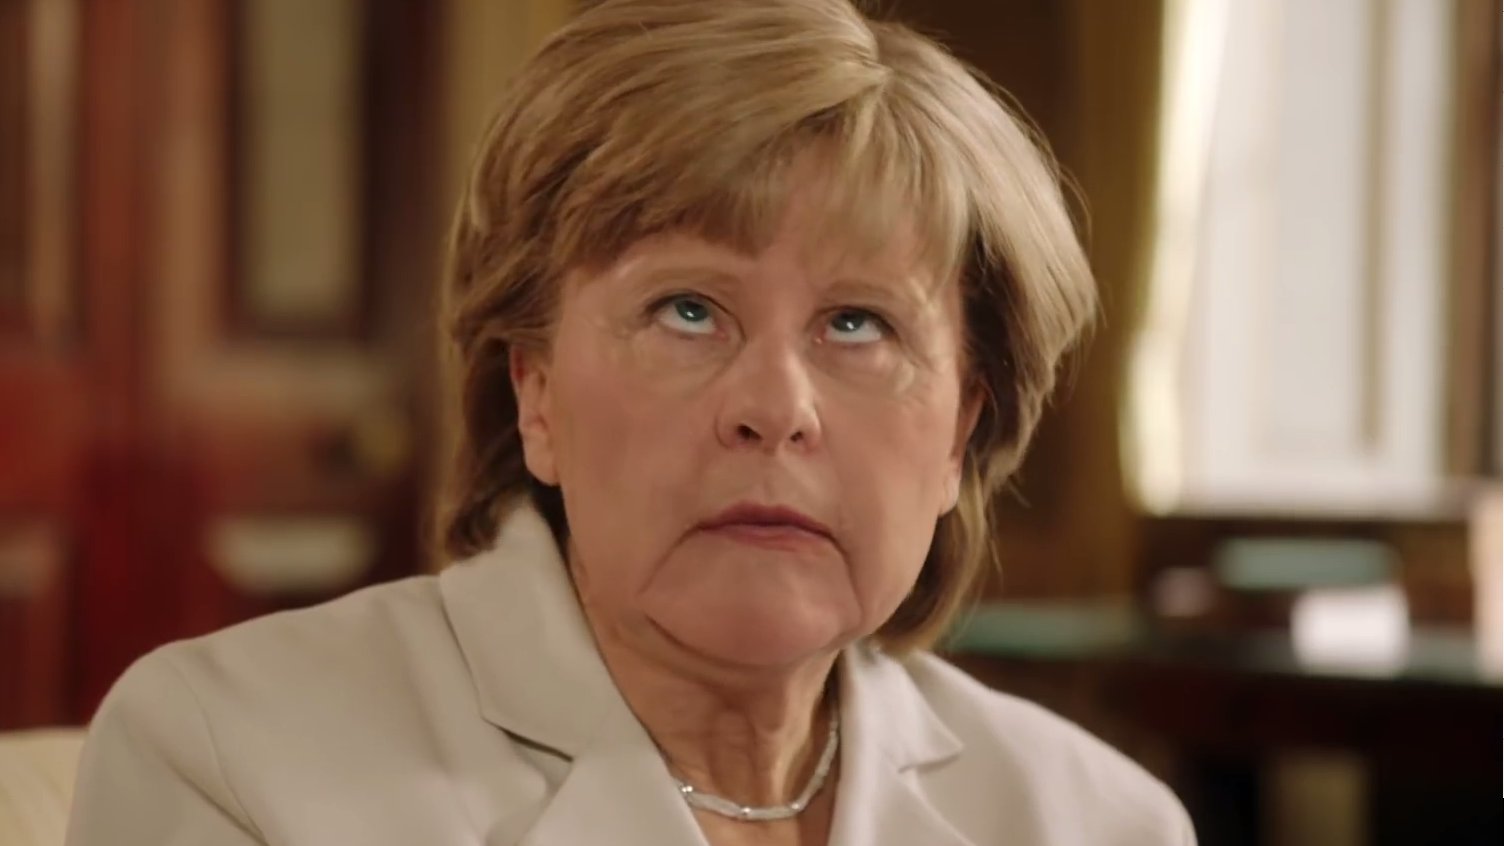 So lustig parodieren die Briten unsere Bundeskanzlerin Merkel